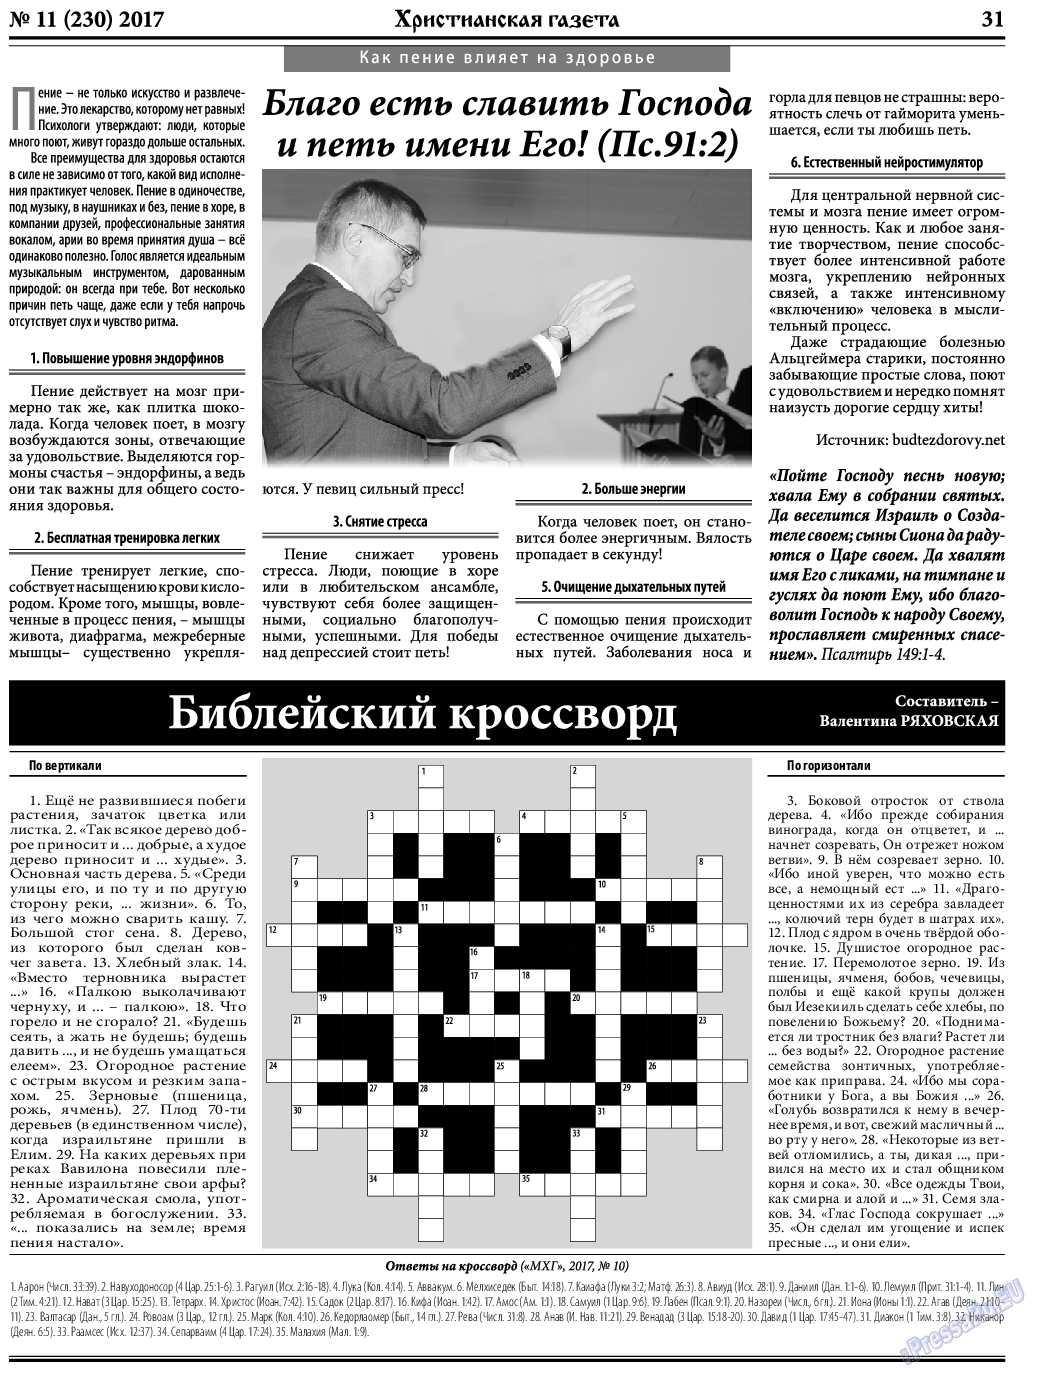 Христианская газета, газета. 2017 №11 стр.31